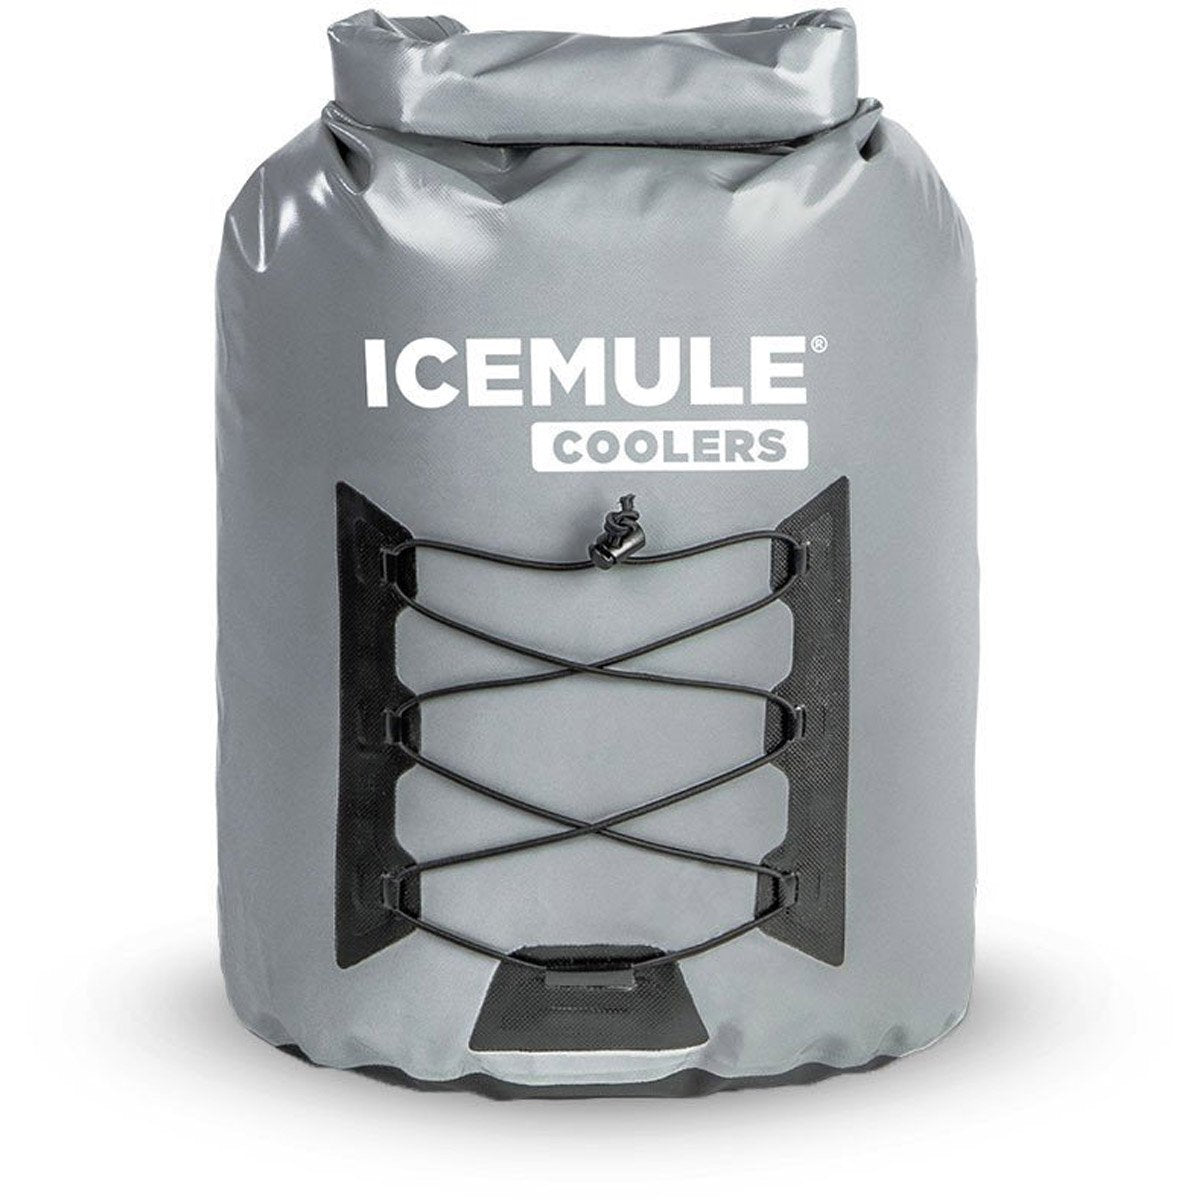 The ICEMULE Pro Large (23L)